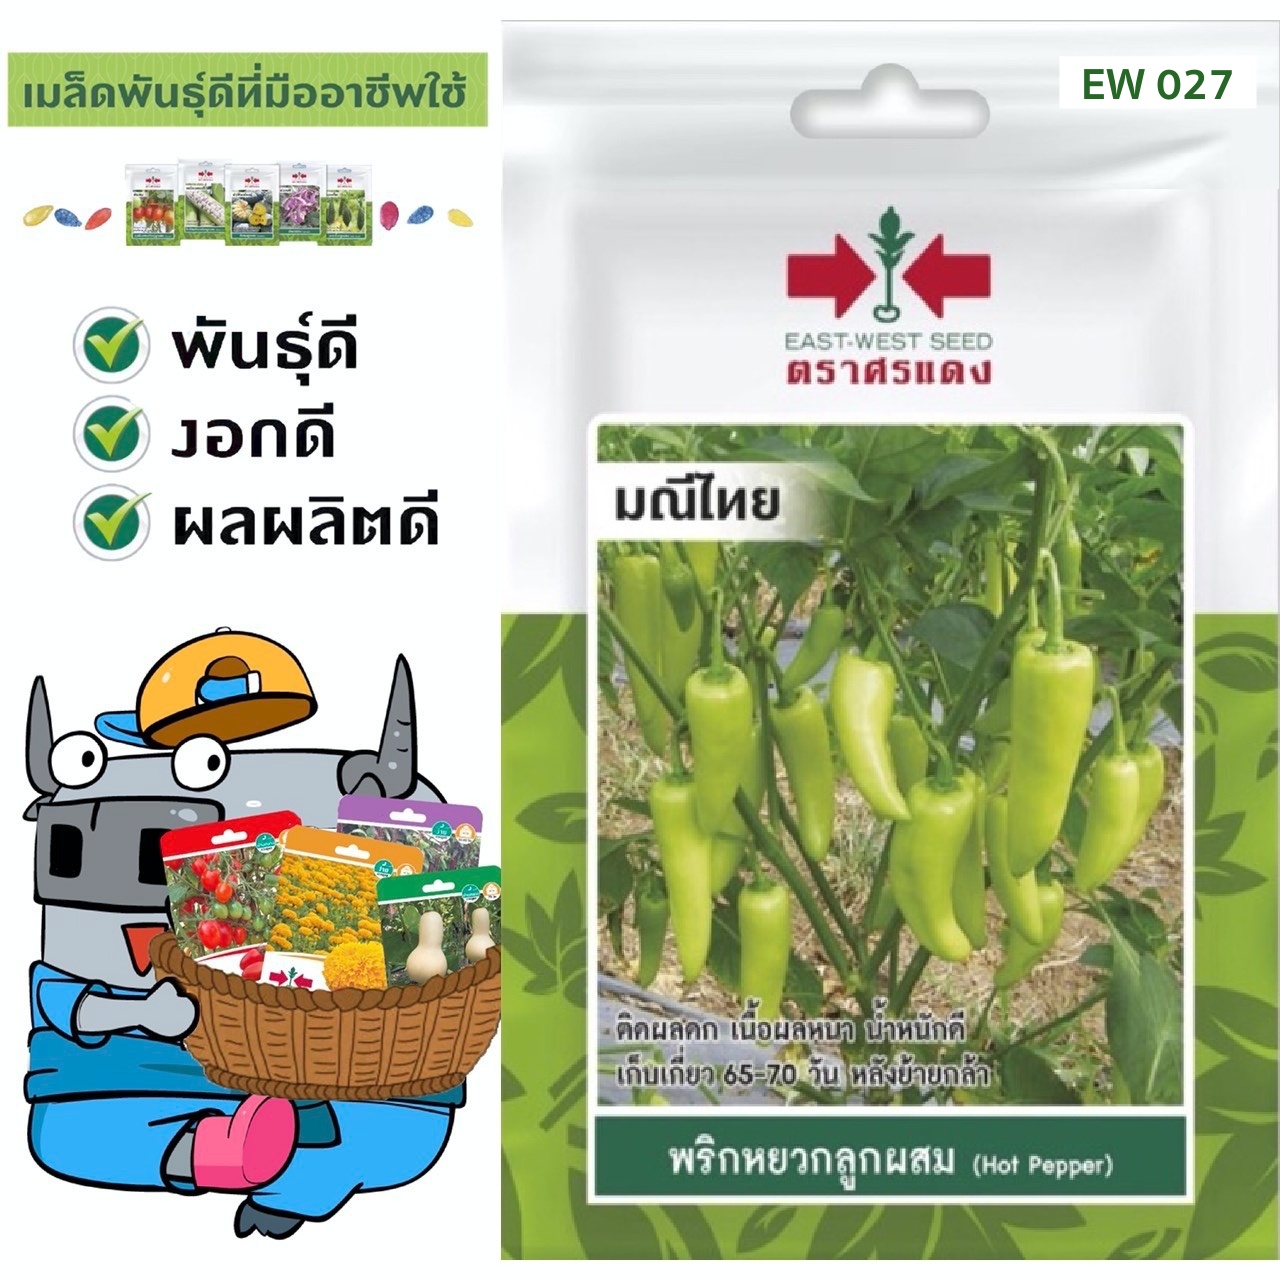 ผักซอง ศรแดง พริกหยวก มณีไทย #EW027 เมล็ดพันธุ์ พริก เมล็ดพันธุ์ผัก ผักสวนครัว ผักศรแดง